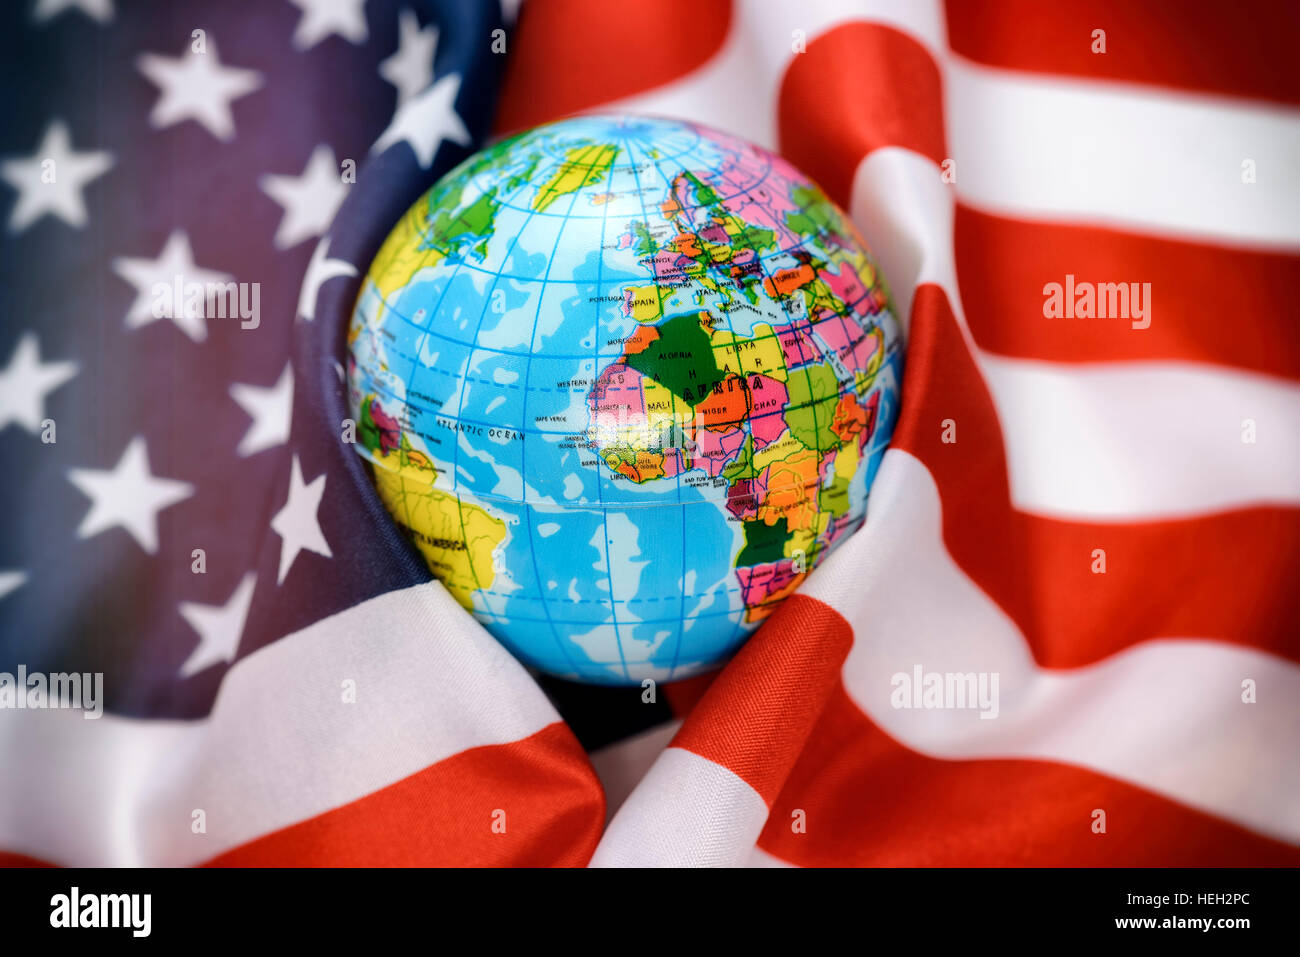 Weltkugel in eine USA-Fahne gewickelt, amerikanische Sicherheitspolitik Stock Photo